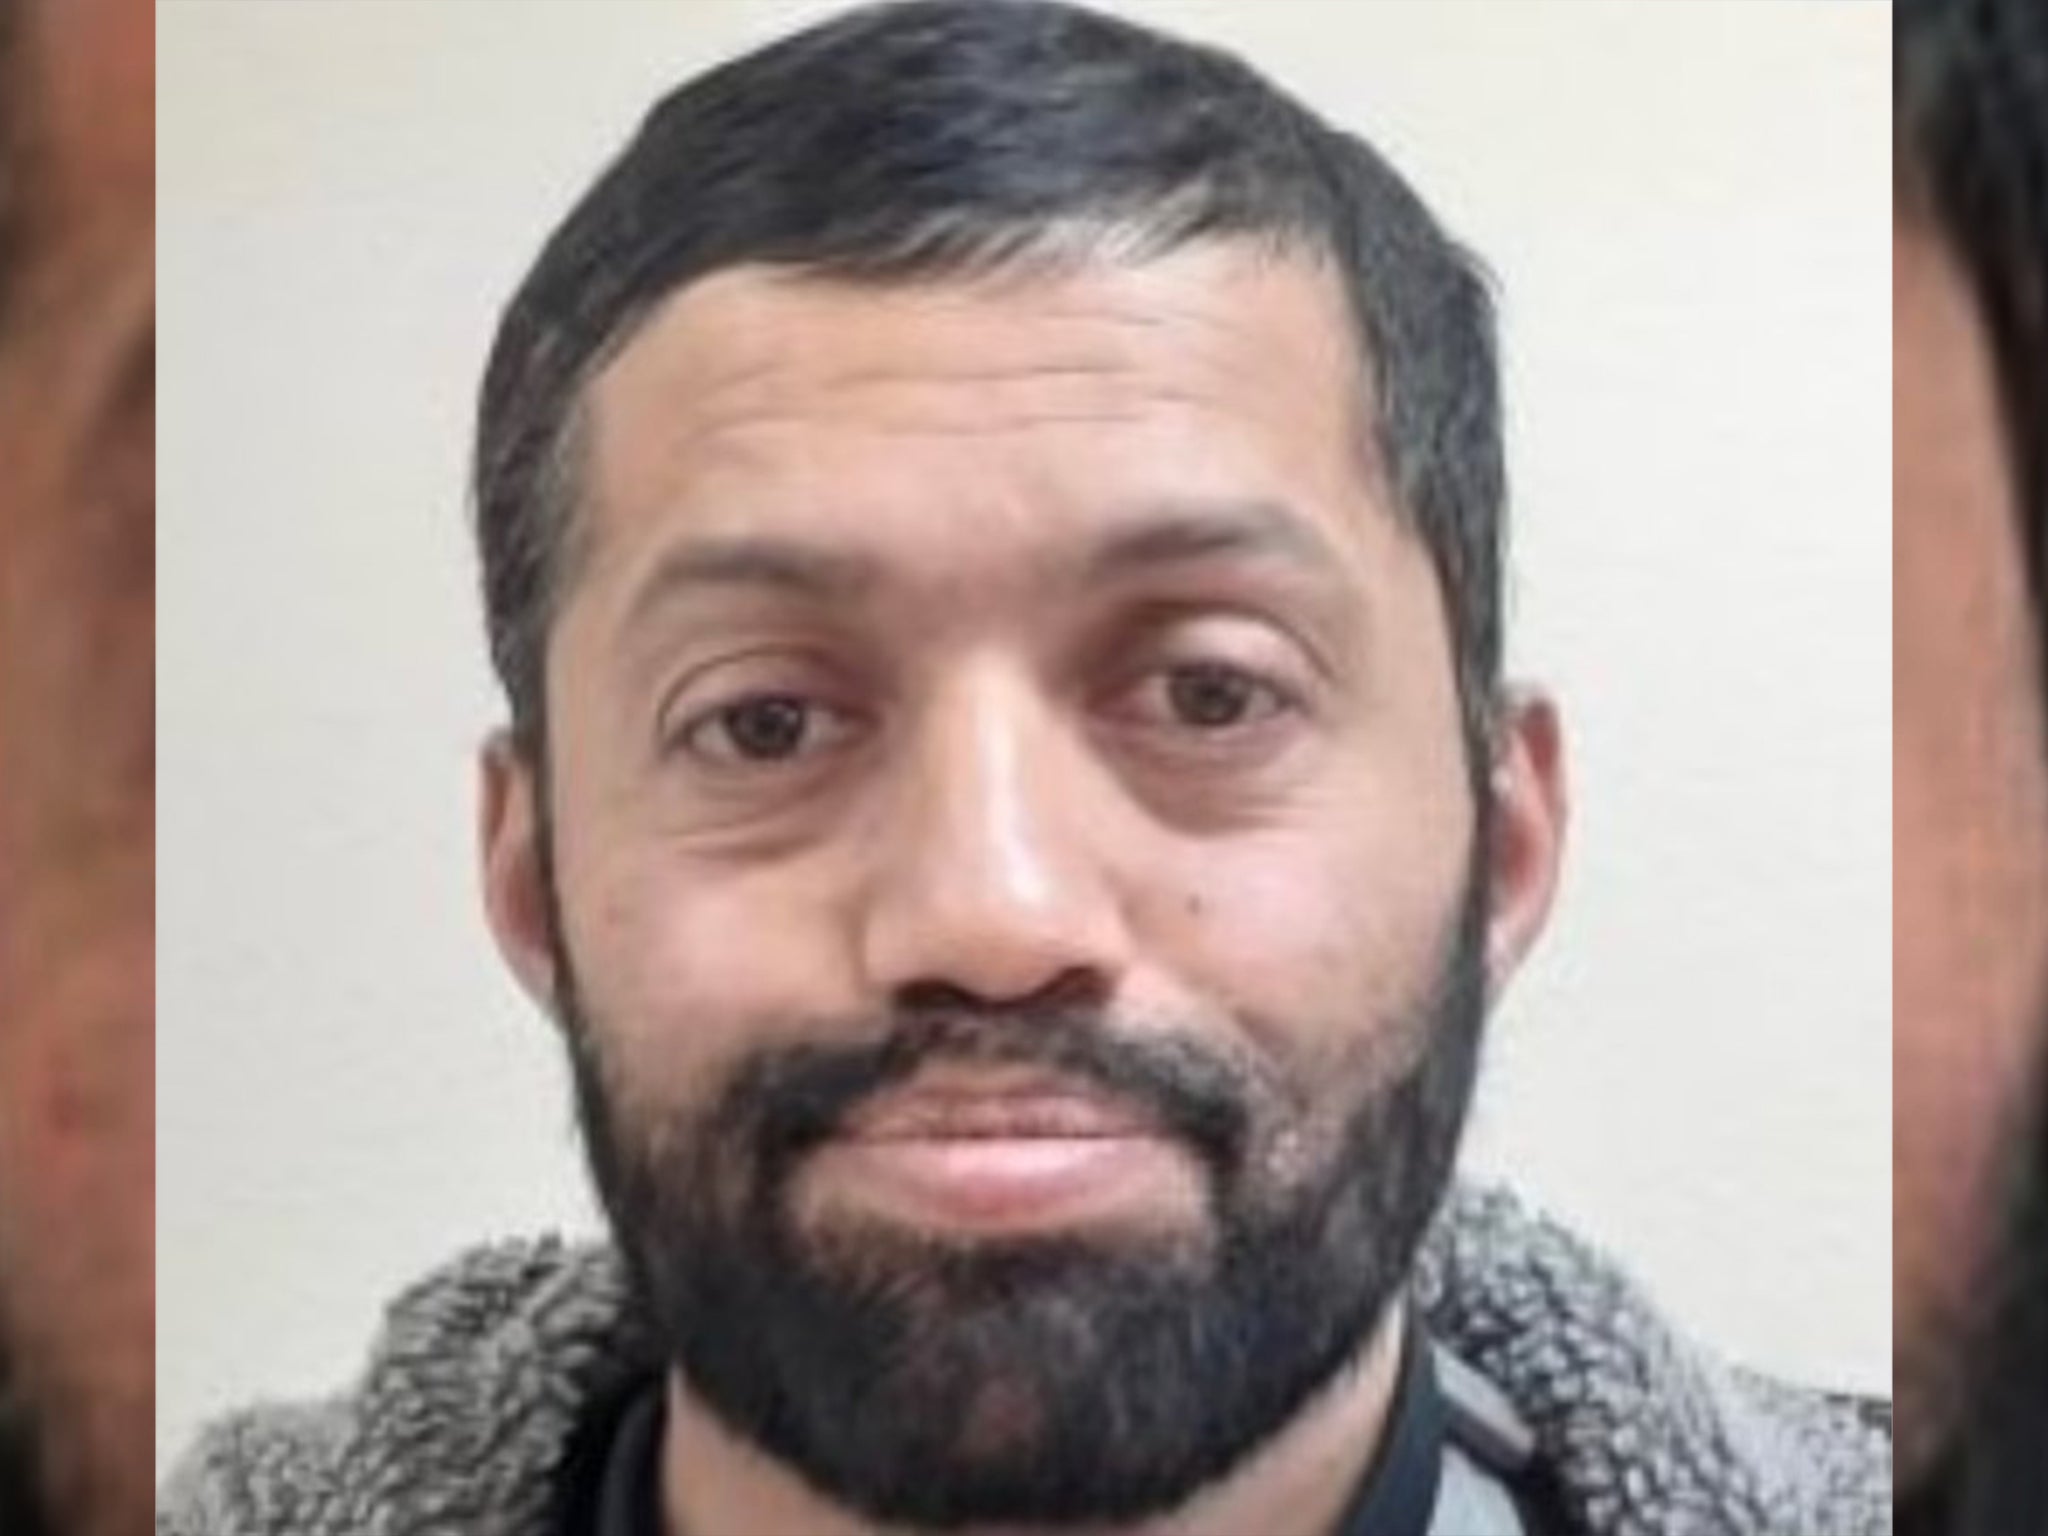 Las autoridades identificaron al hombre armado como un británico de 44 años llamado Malik Faisal Akram